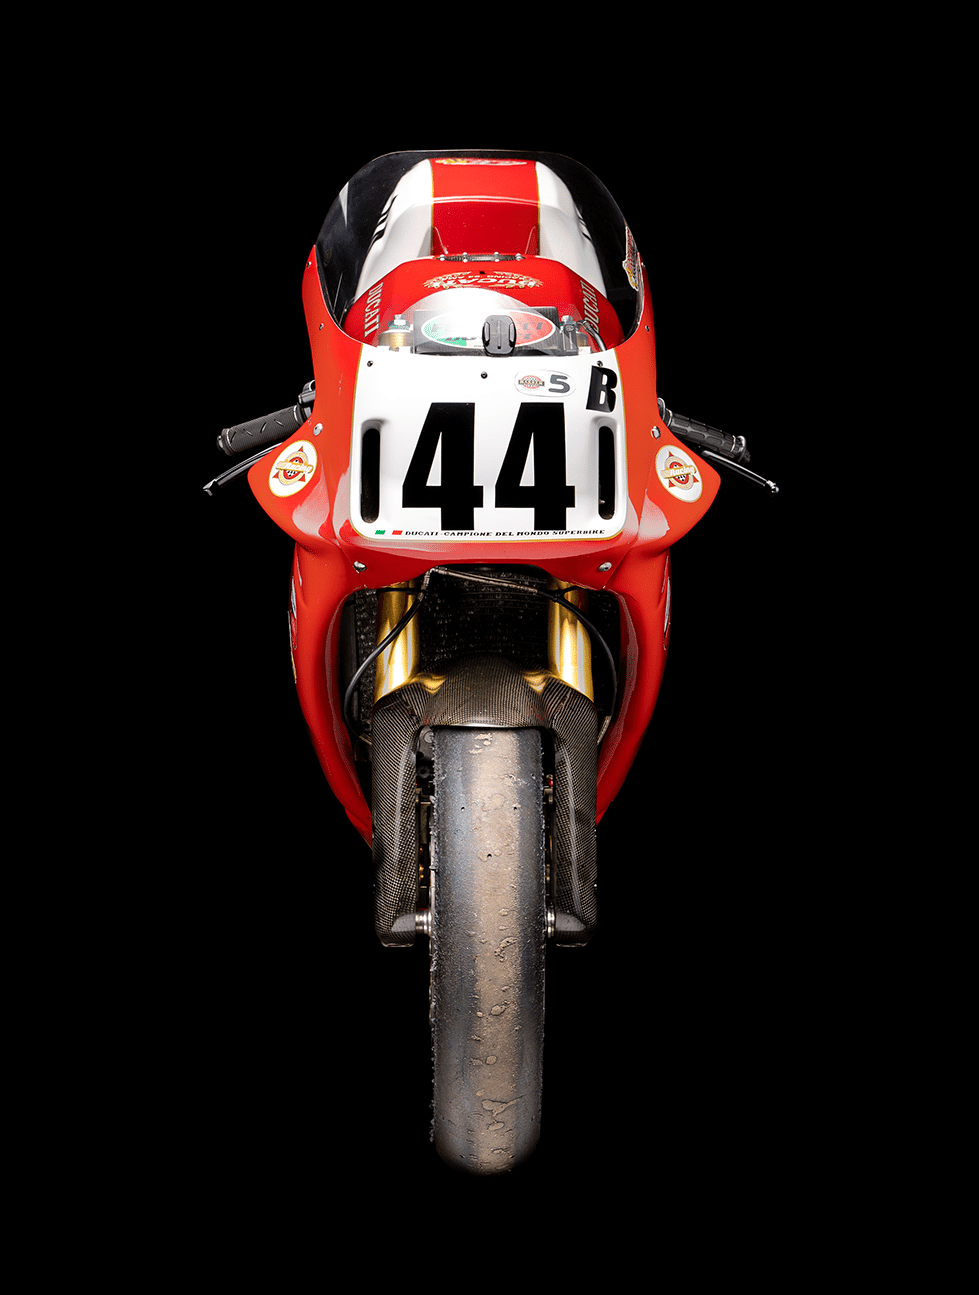 Motor foto Red motorcycle 44 ducati